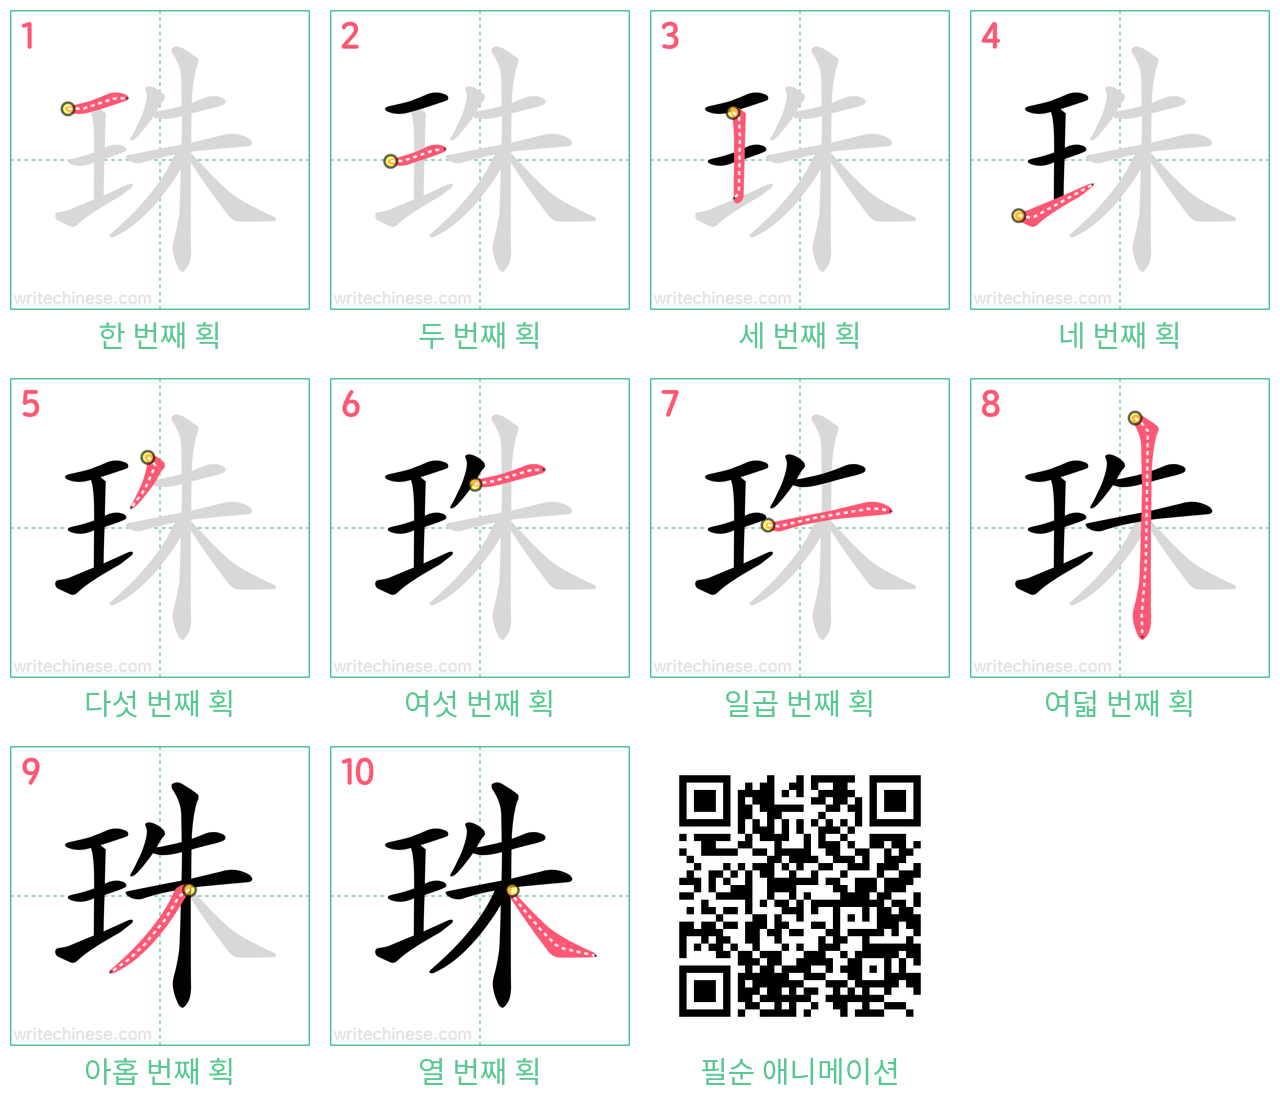 珠 step-by-step stroke order diagrams